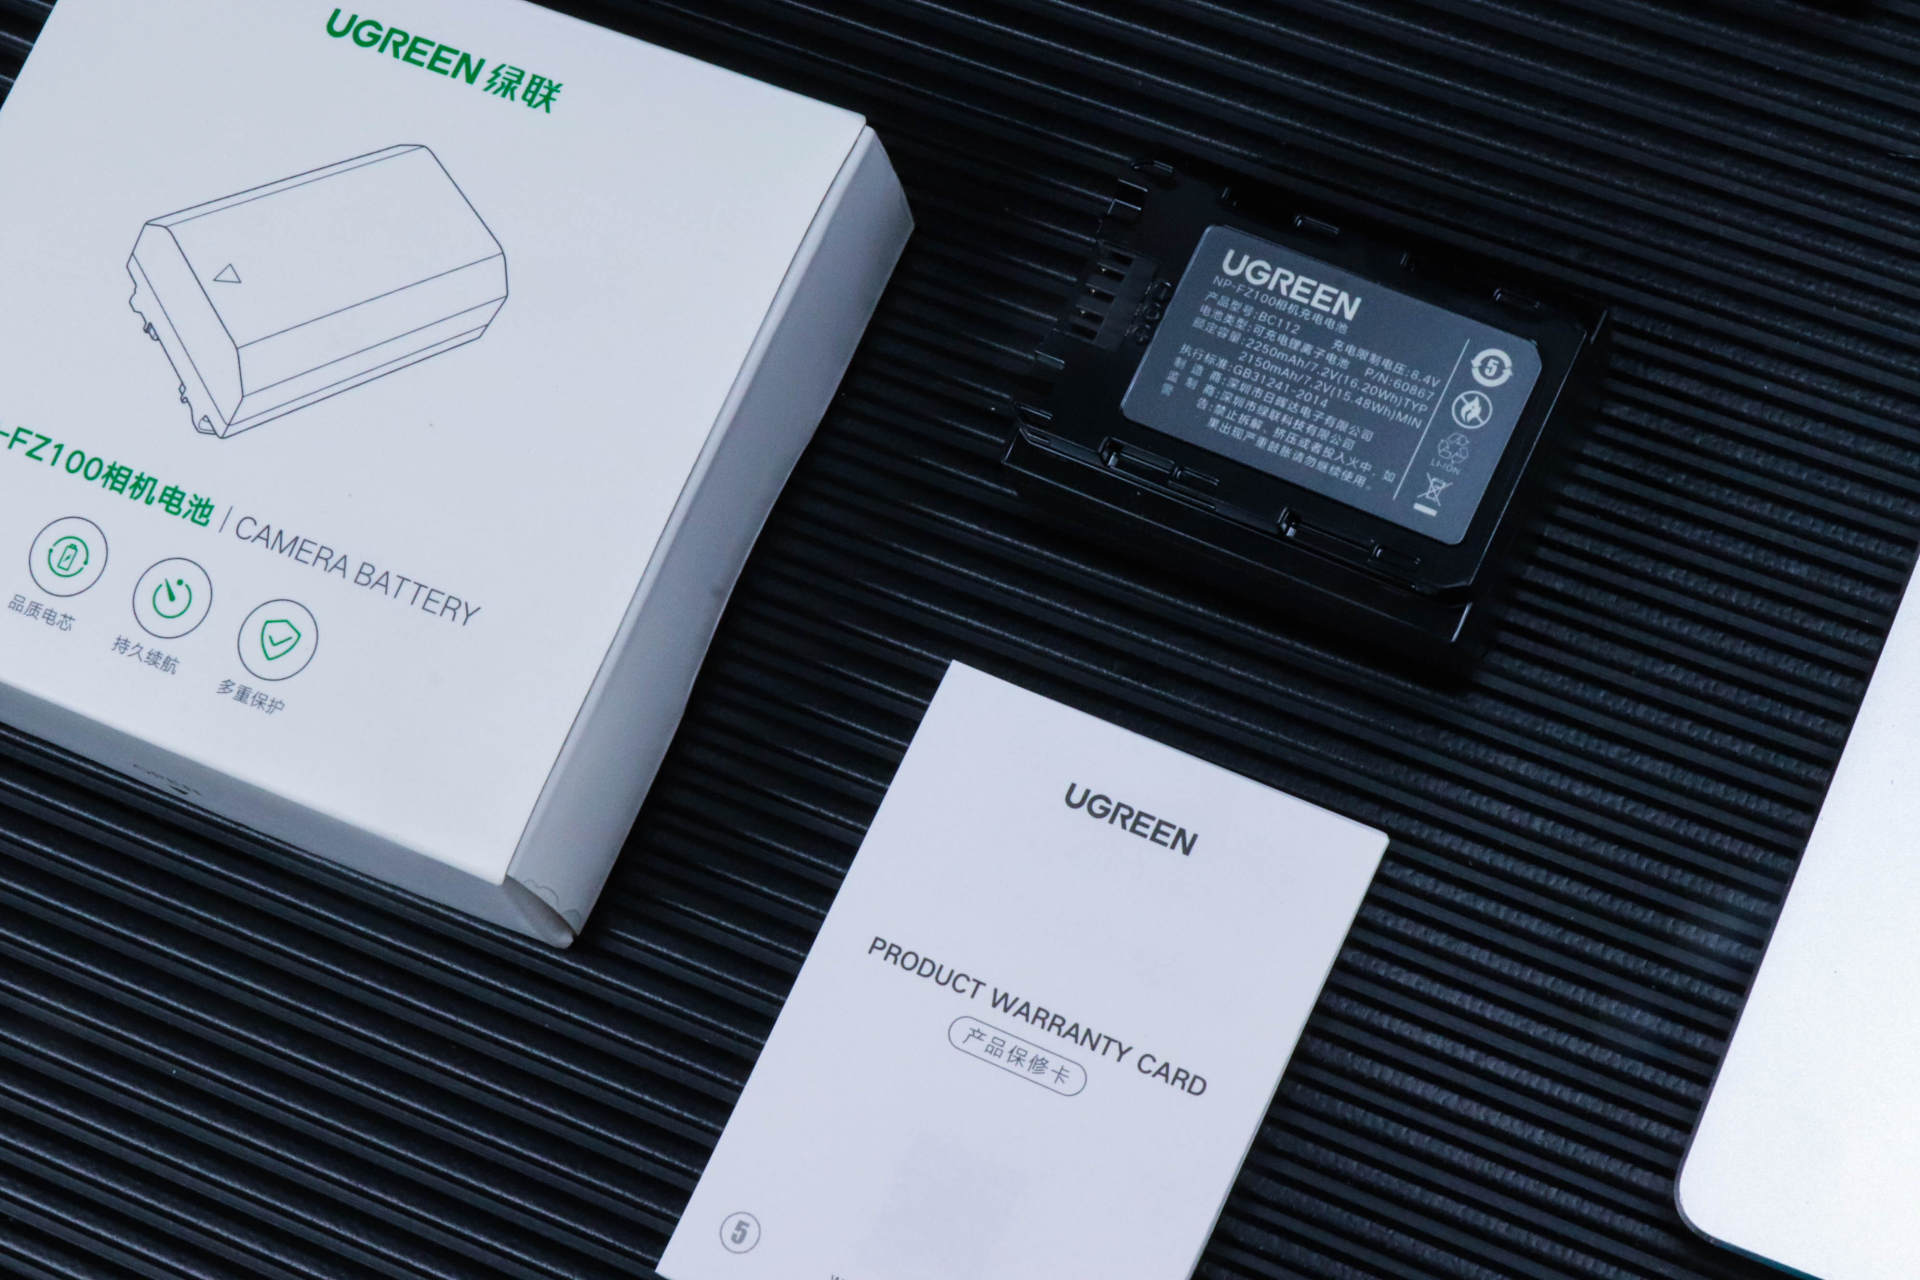 绿联NP-FZ100相机电池充电器套装：为索尼电量保驾护航